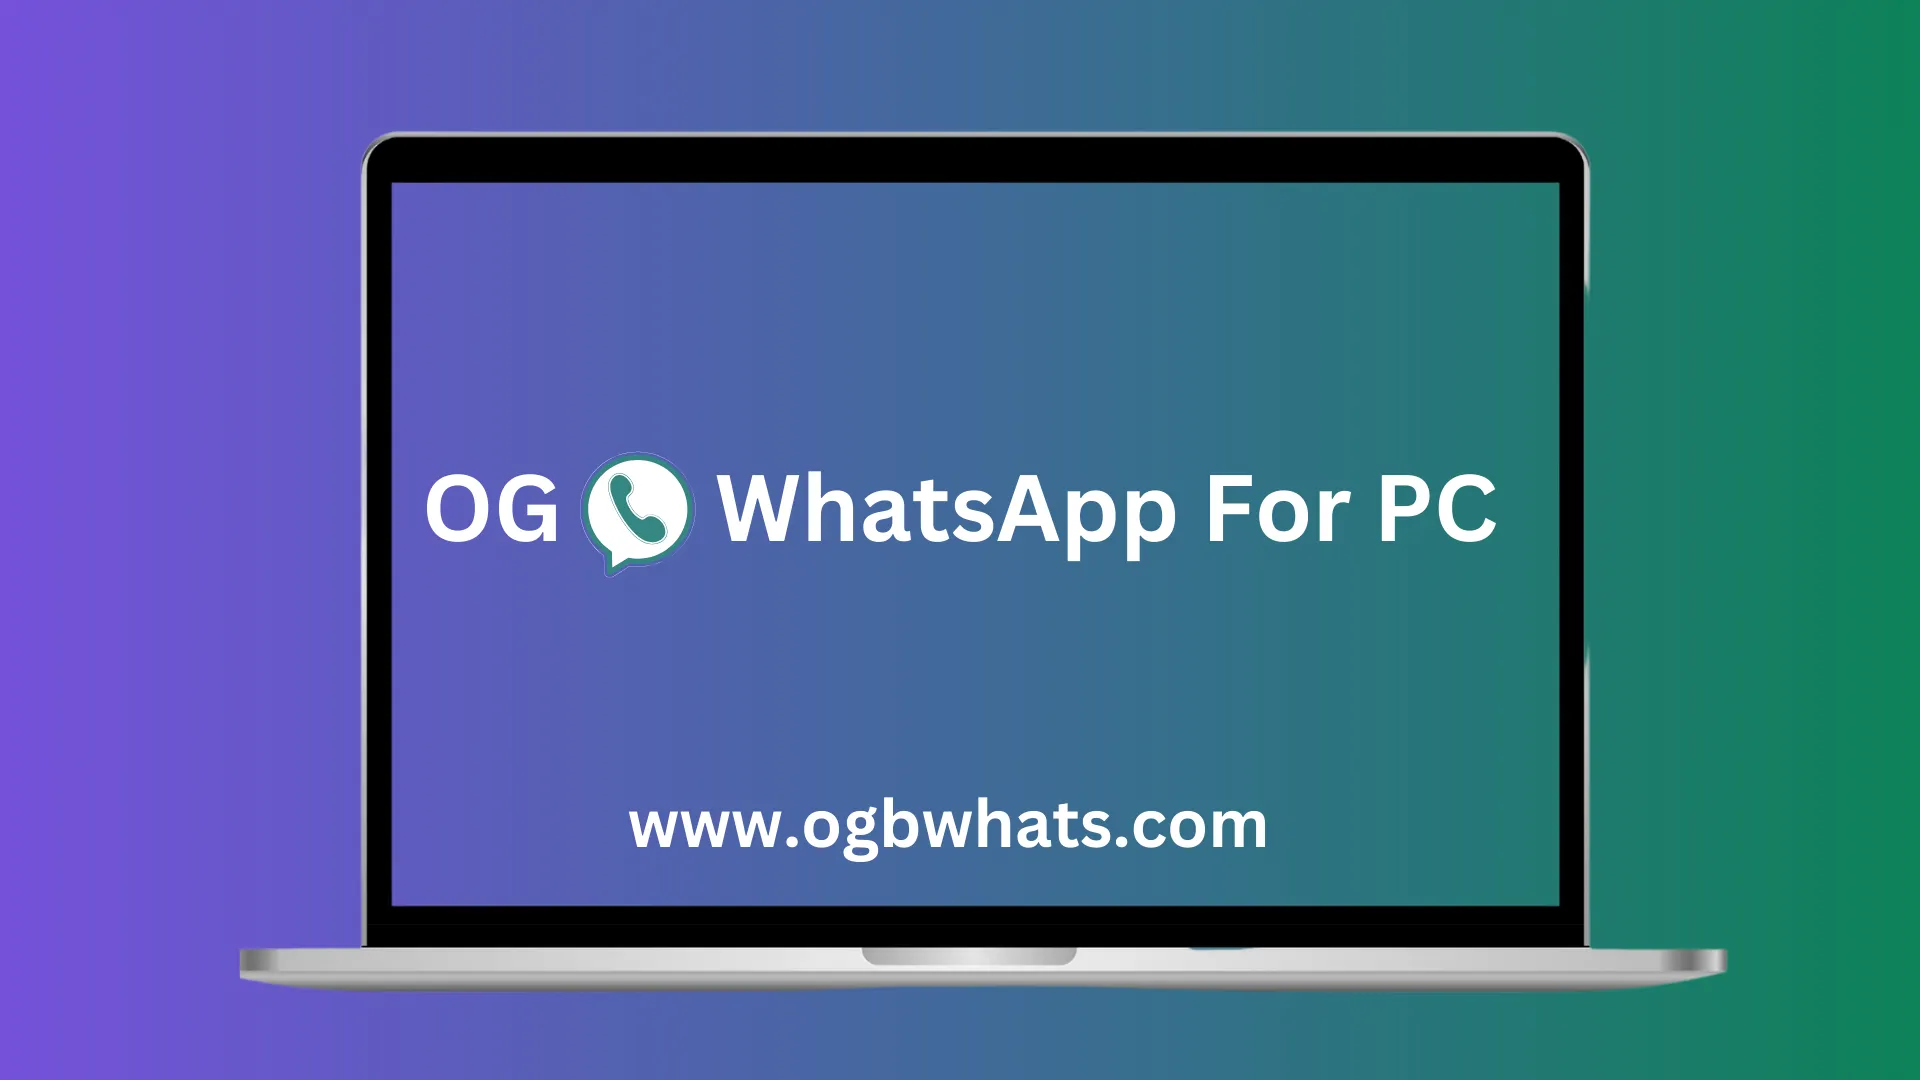 OG WhatsApp for PC